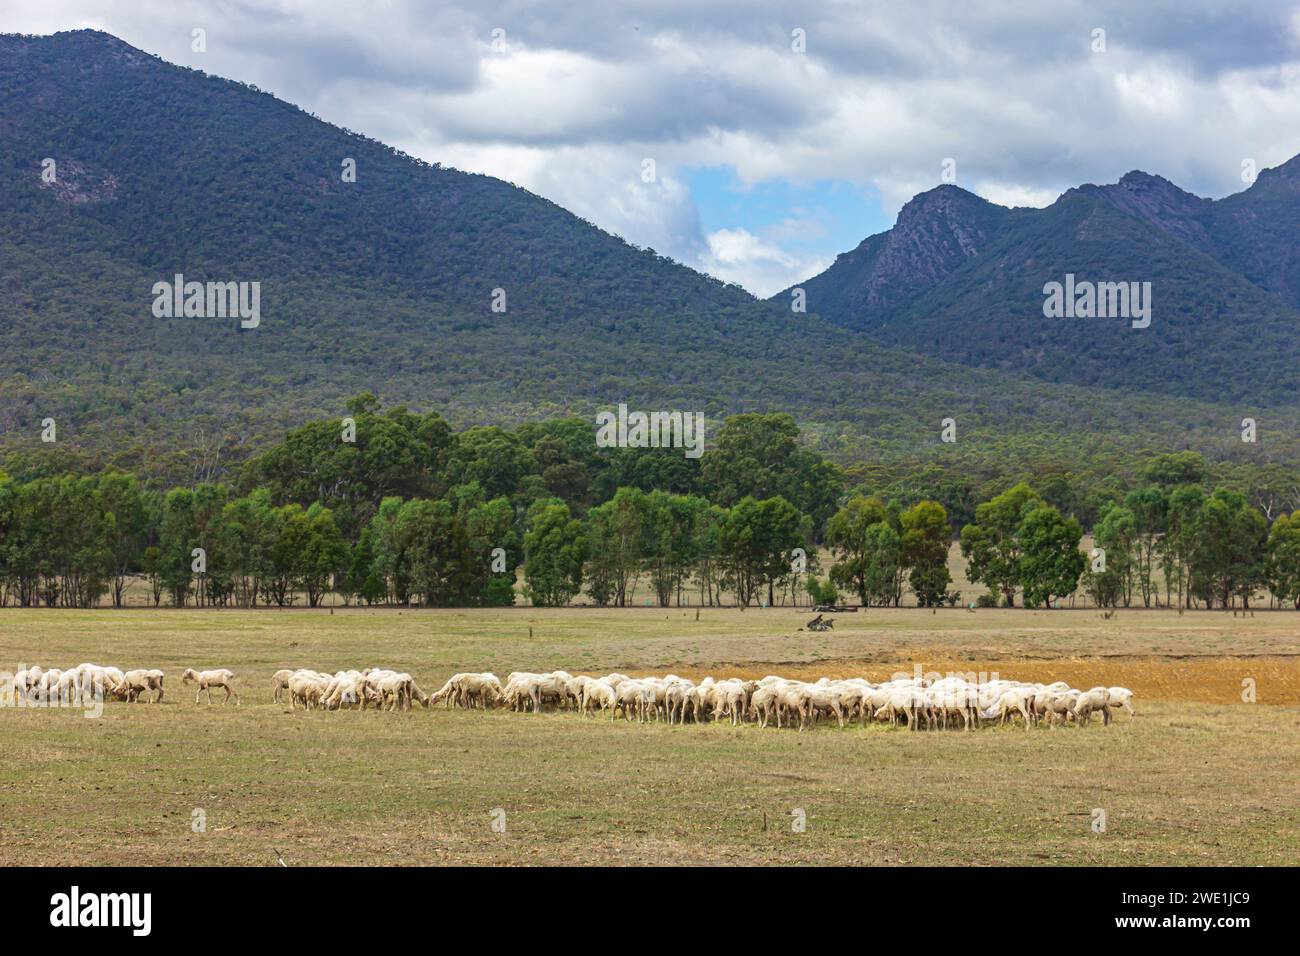 Schafherde, die auf einer Wiese mit Bäumen und Bergen im Hintergrund weiden, im Victoria Valley of Southern Grampians Region in Victoria, Australien. Stockfoto